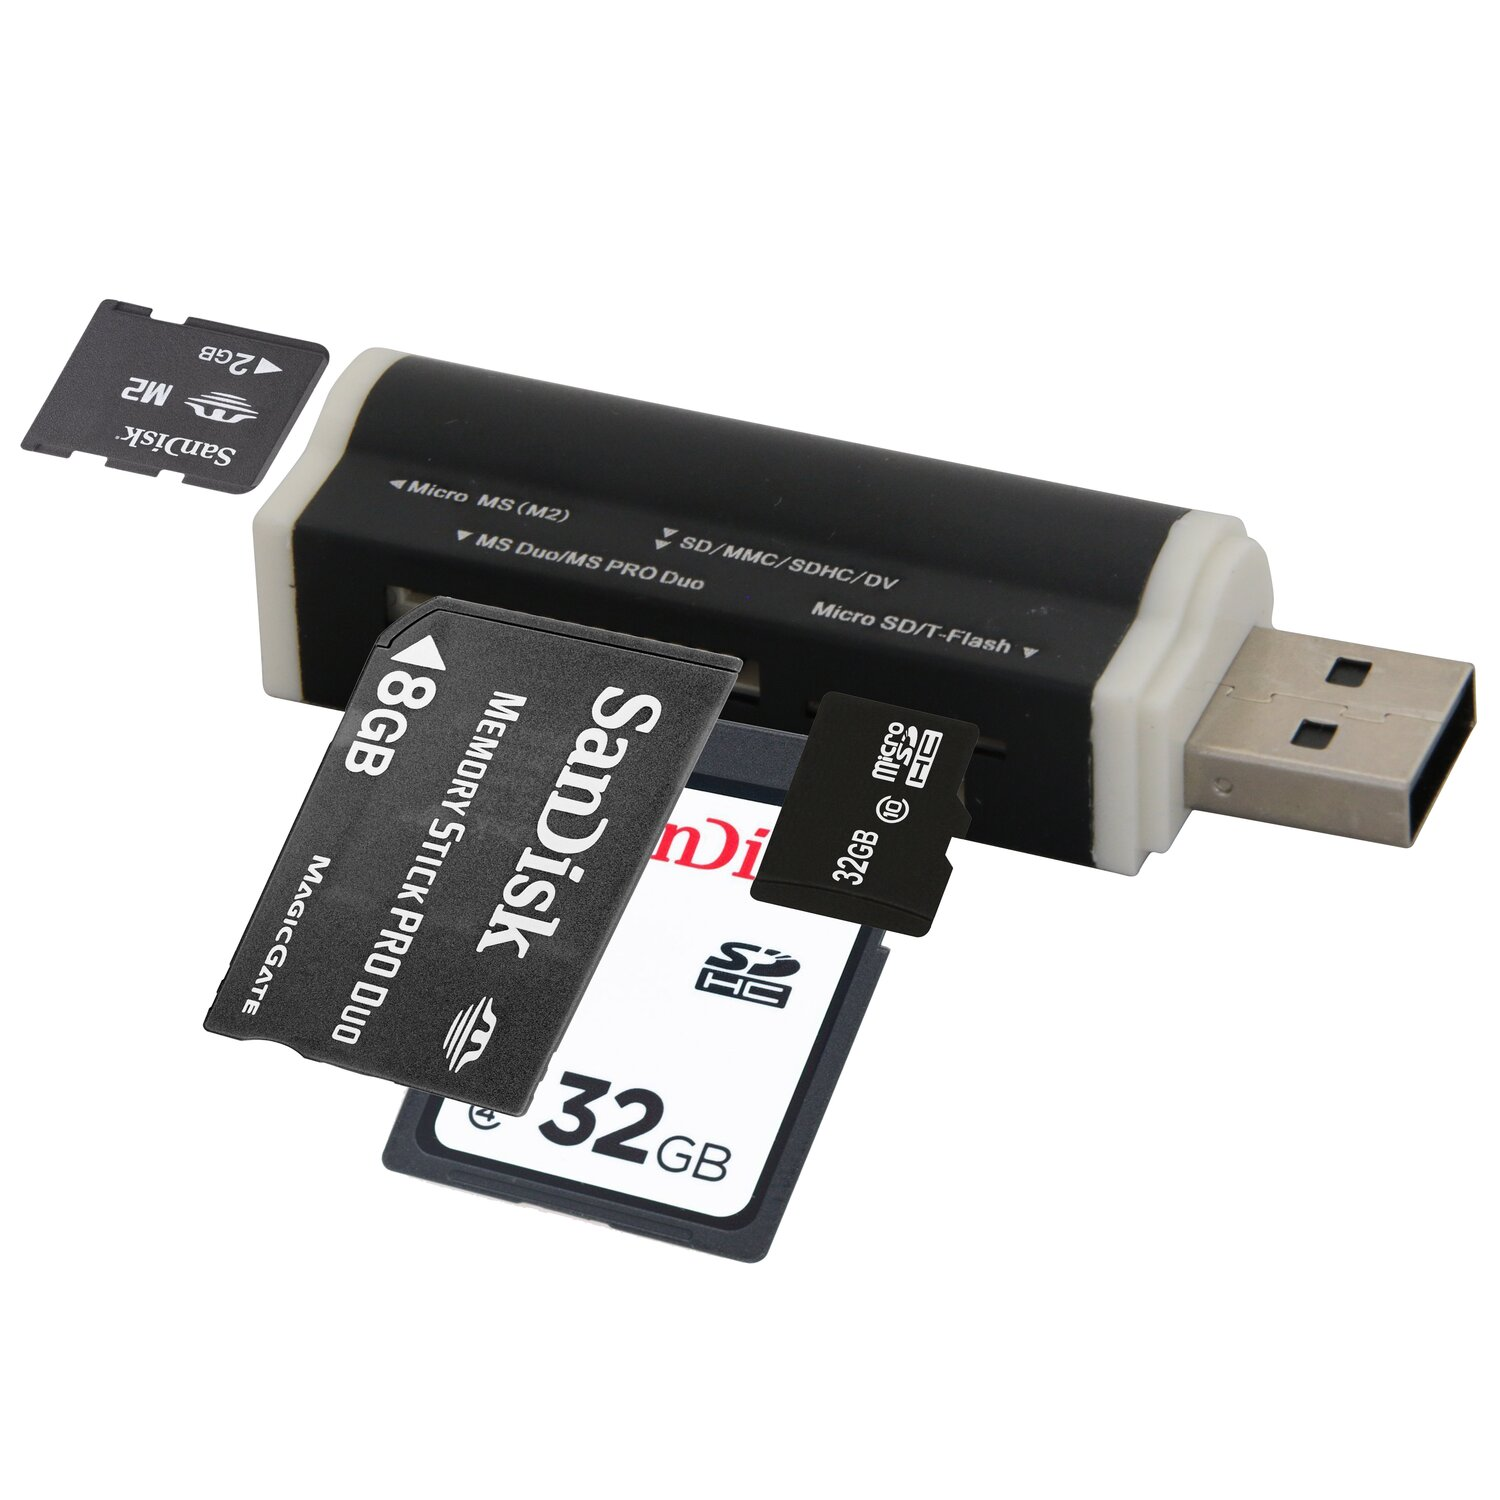 COFI All in One USB Kartenleser